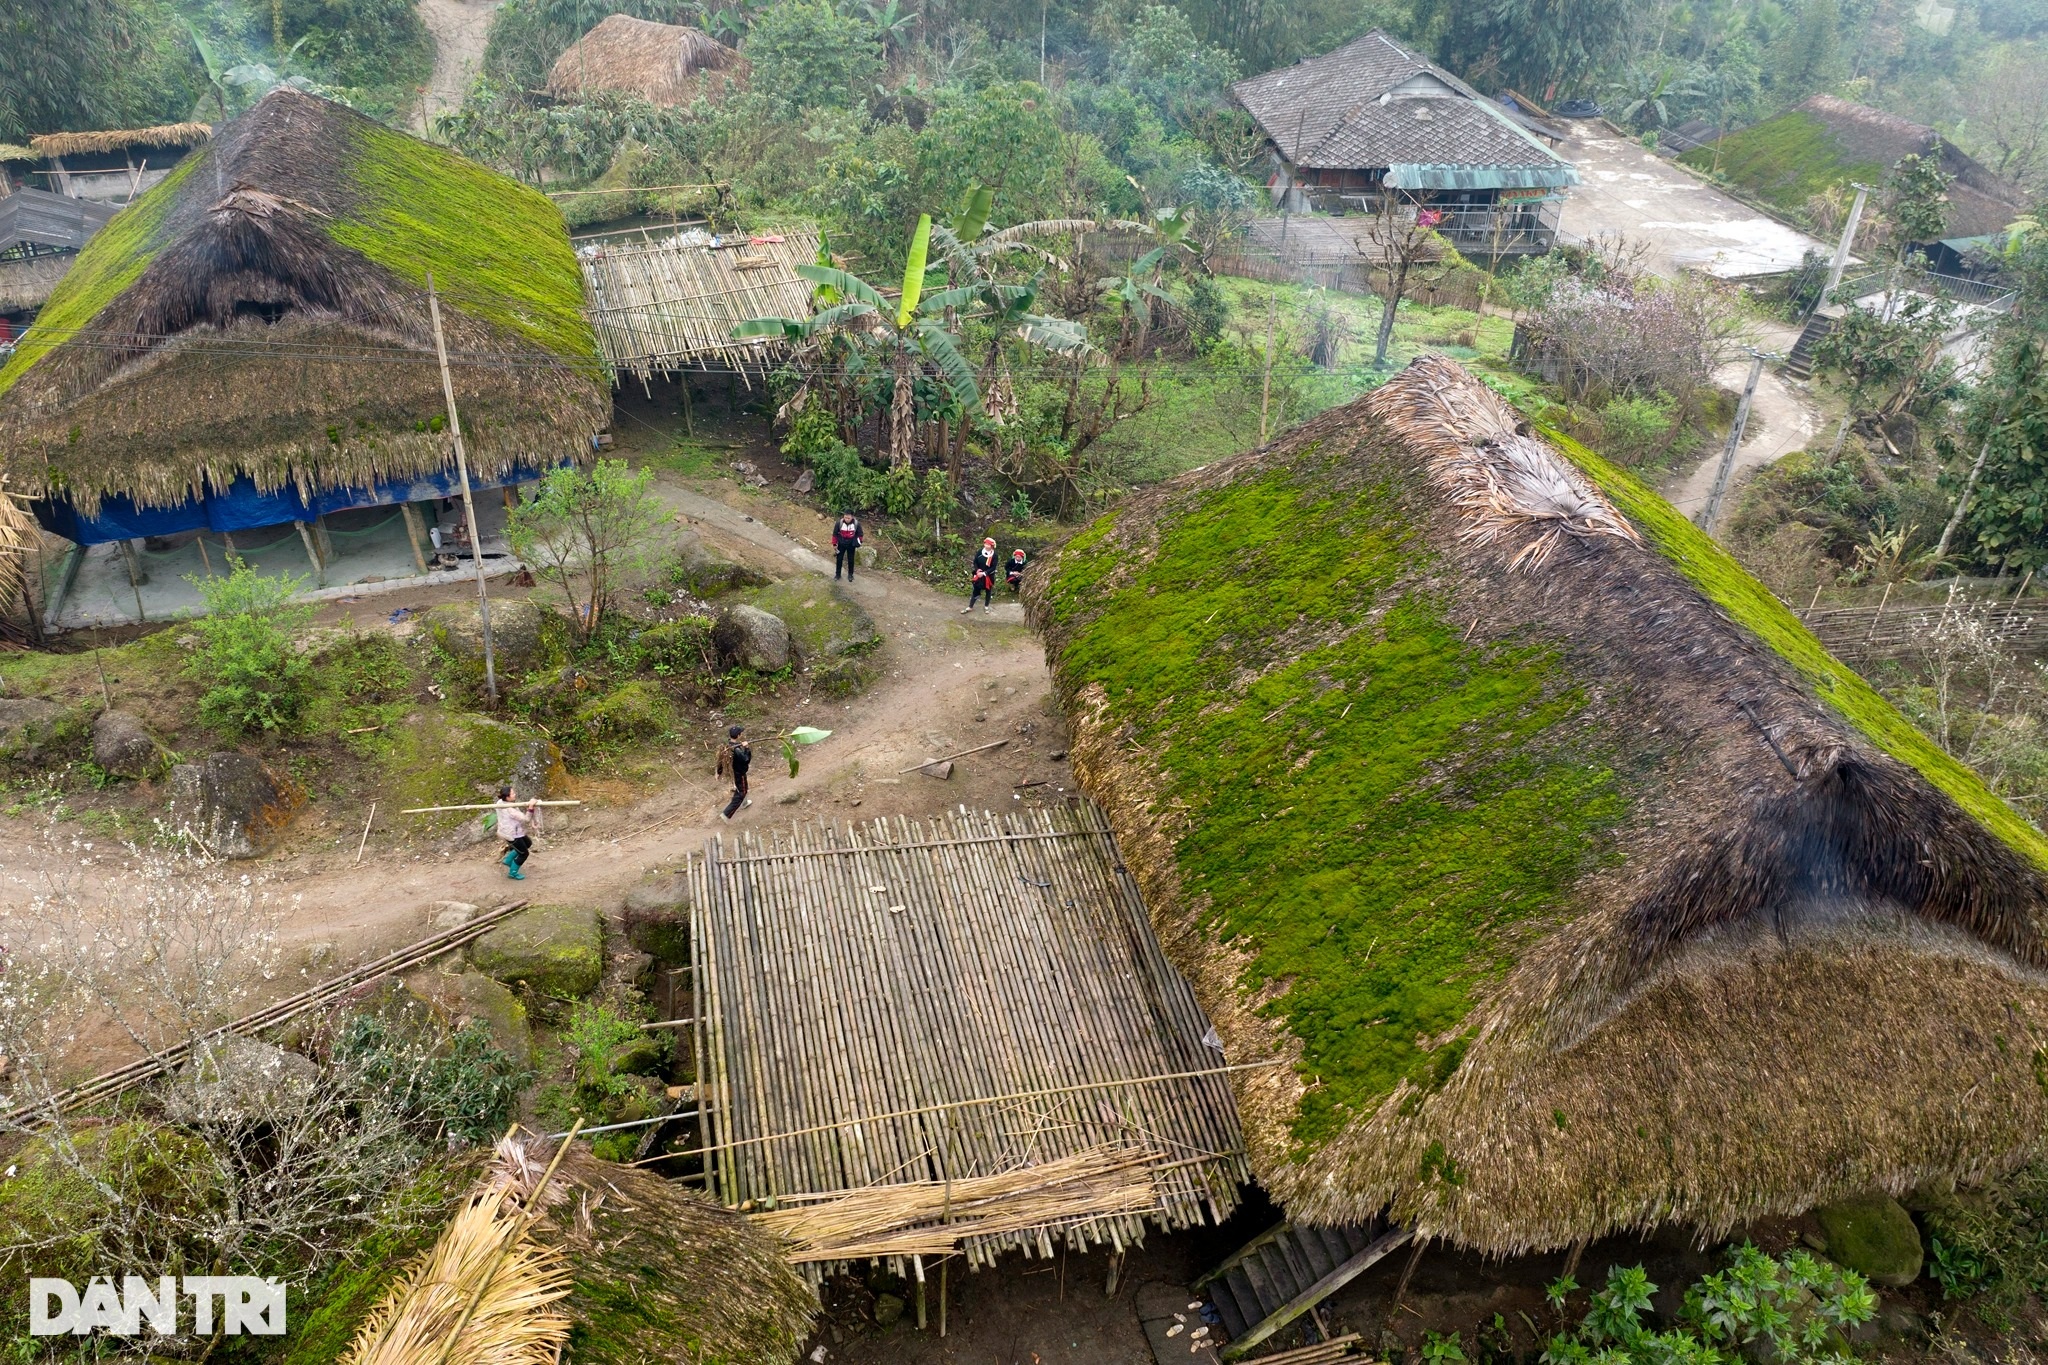 Thôn Xà Phìn hiện có hơn 50 hộ dân sinh sống, 100% là đồng bào dân tộc Dao. Bản làng nơi đây có tới hơn 90% các gia đình vẫn xây cất, sử dụng nhà sàn mái lá cọ truyền thống, trong đó có hàng chục căn